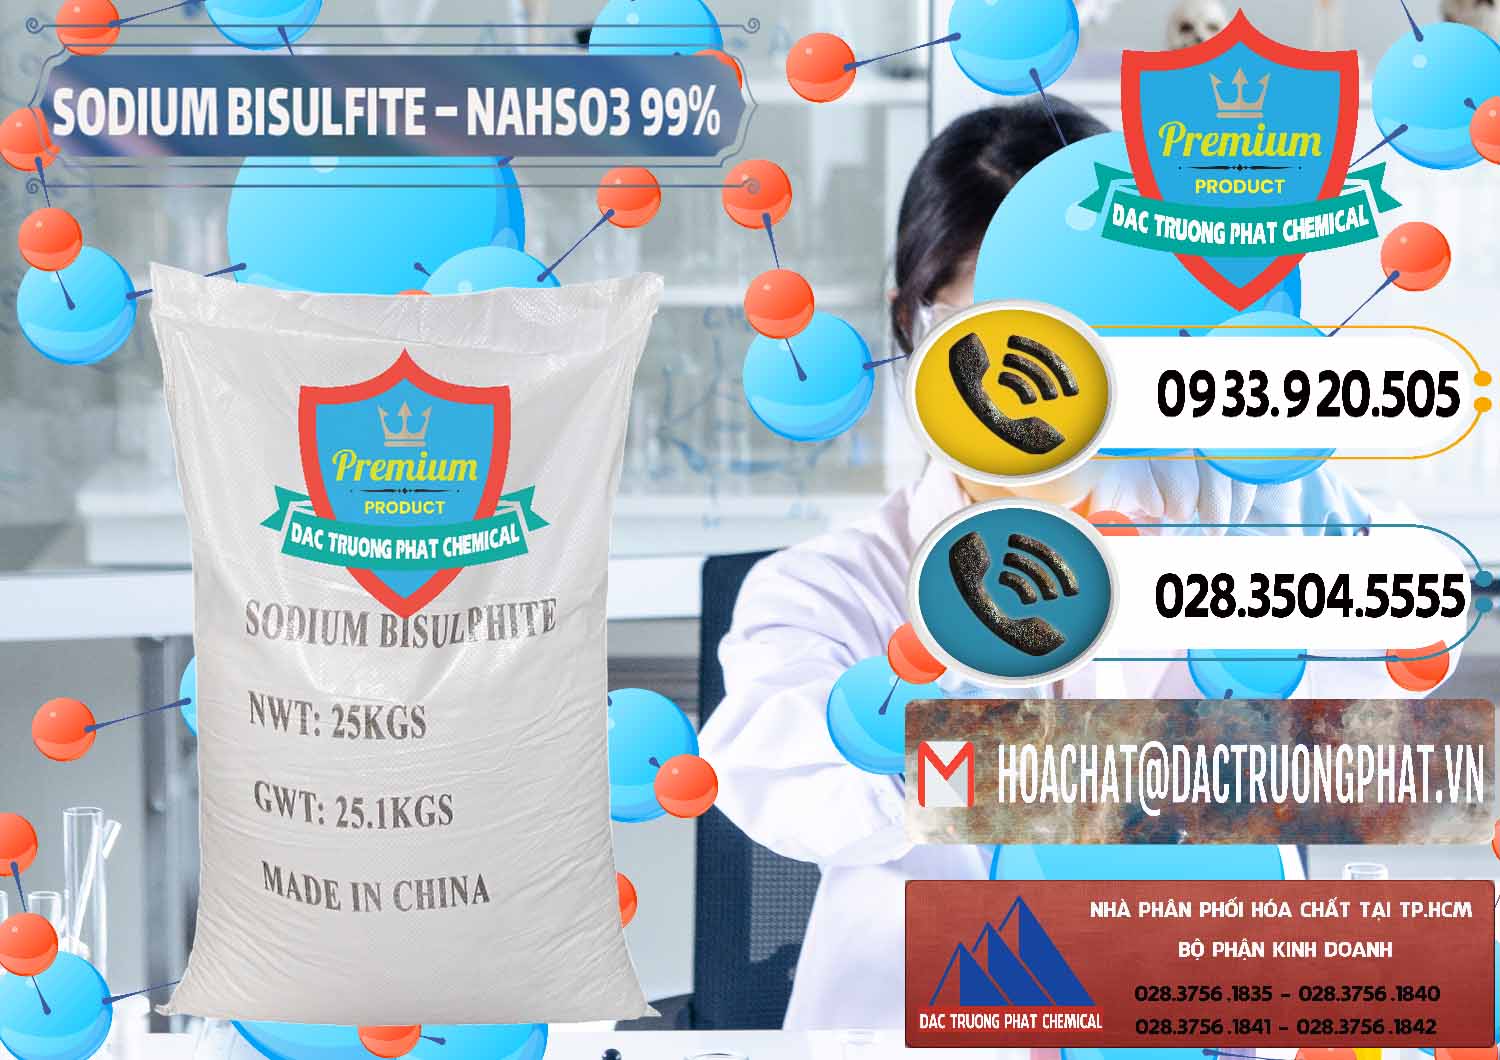 Nơi chuyên bán và phân phối Sodium Bisulfite – NAHSO3 Trung Quốc China - 0140 - Cty cung cấp & phân phối hóa chất tại TP.HCM - hoachatdetnhuom.vn